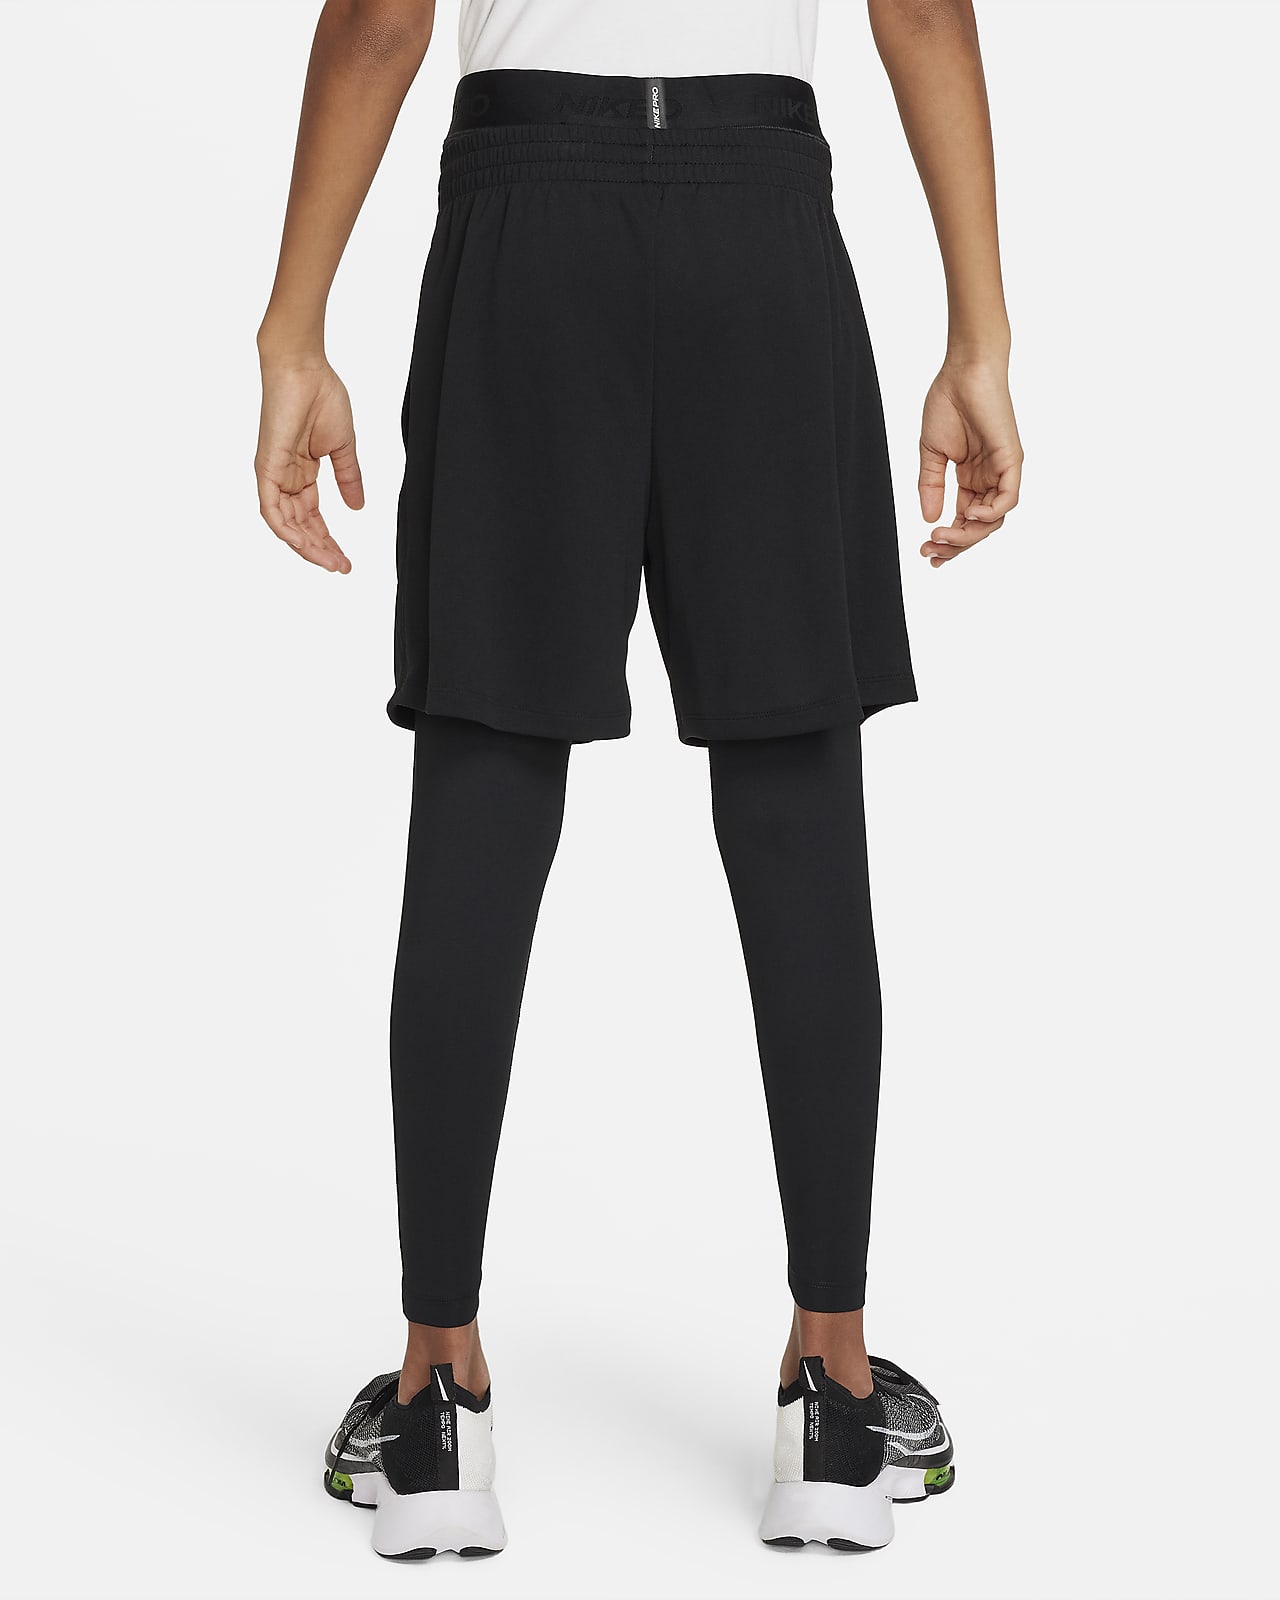 NIKE Dri-fit Boys'/girls' Running Training Short Shorts. Label Size: XL.  Black -  Canada